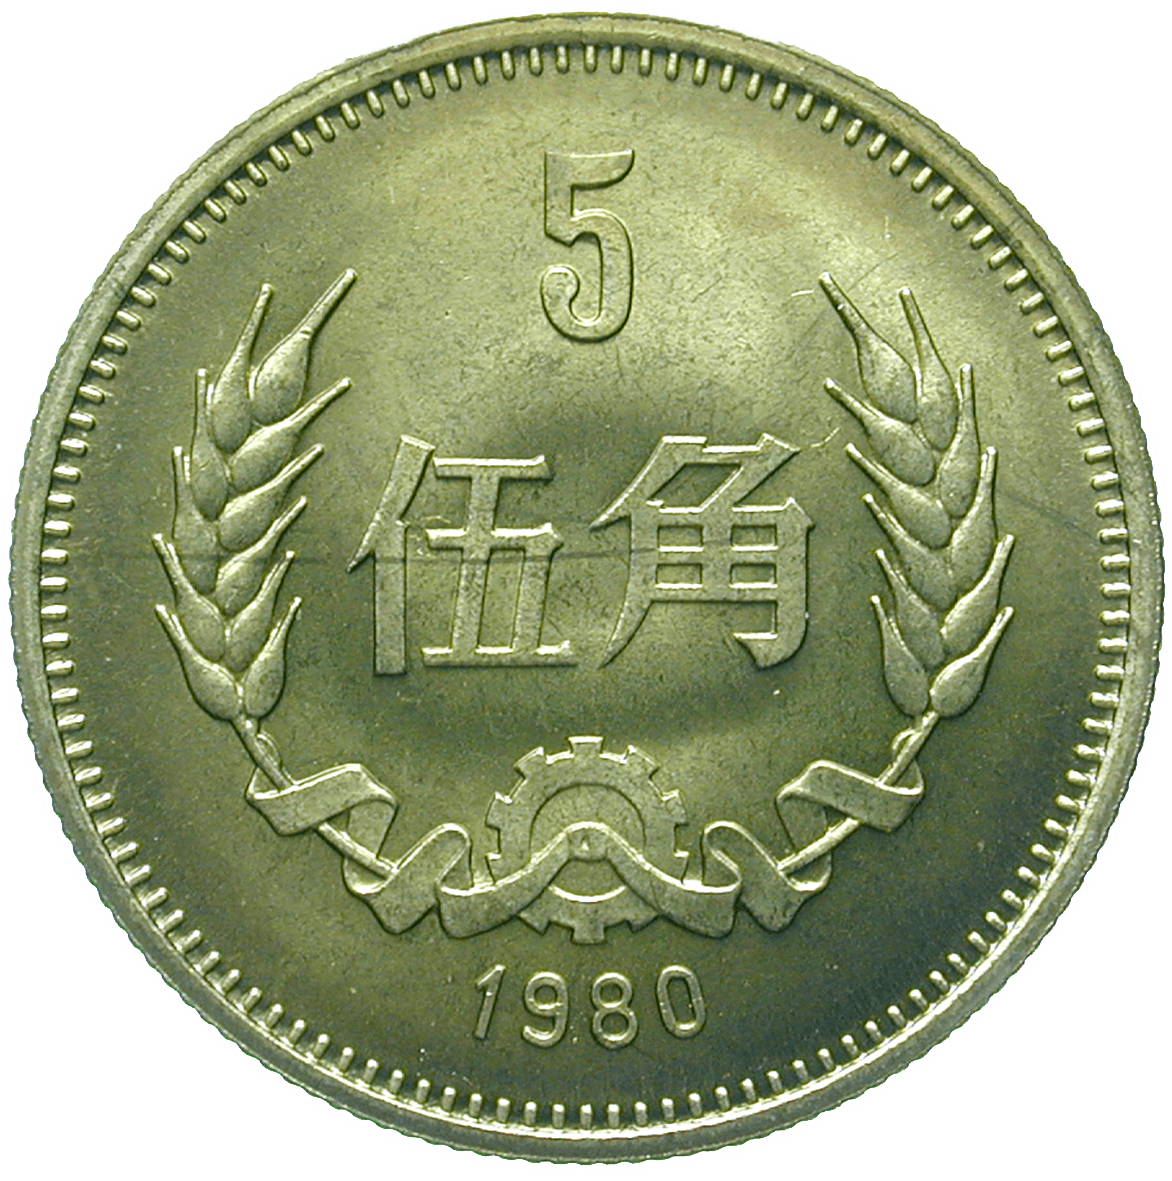 People's Republic of China, 5 Jiao 1980 (reverse)